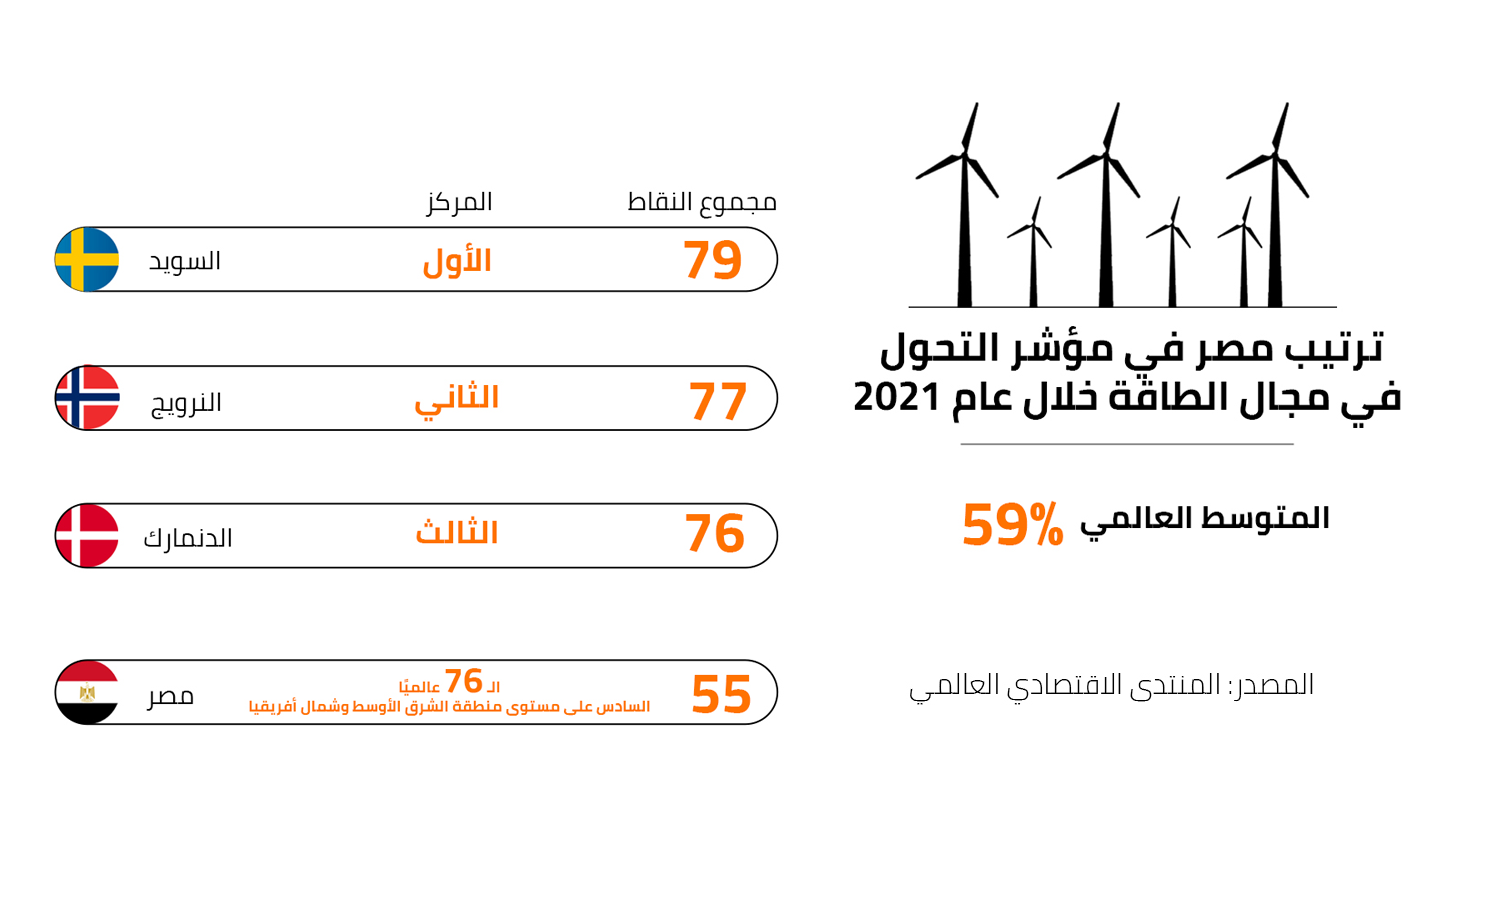 مصر تحقق خطوة إيجابية في مؤشر تحول الطاقة العالمي 